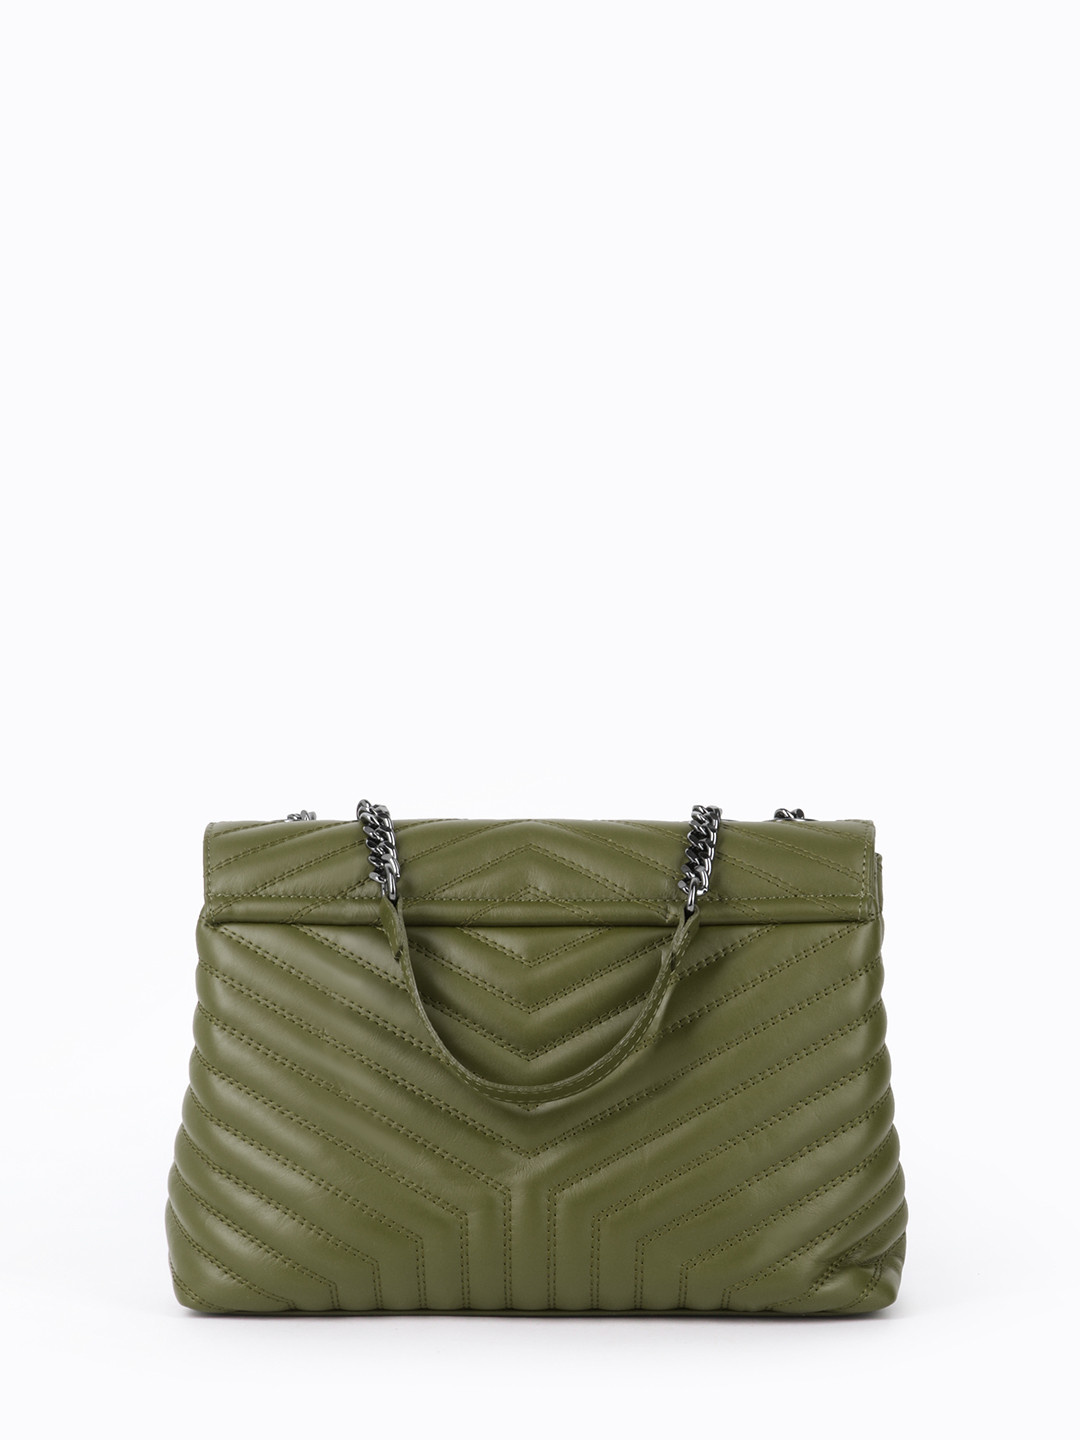 Фото Женская сумка-флэп из стеганой кожи оливкового цвета с ручками на цепочках Классические сумки